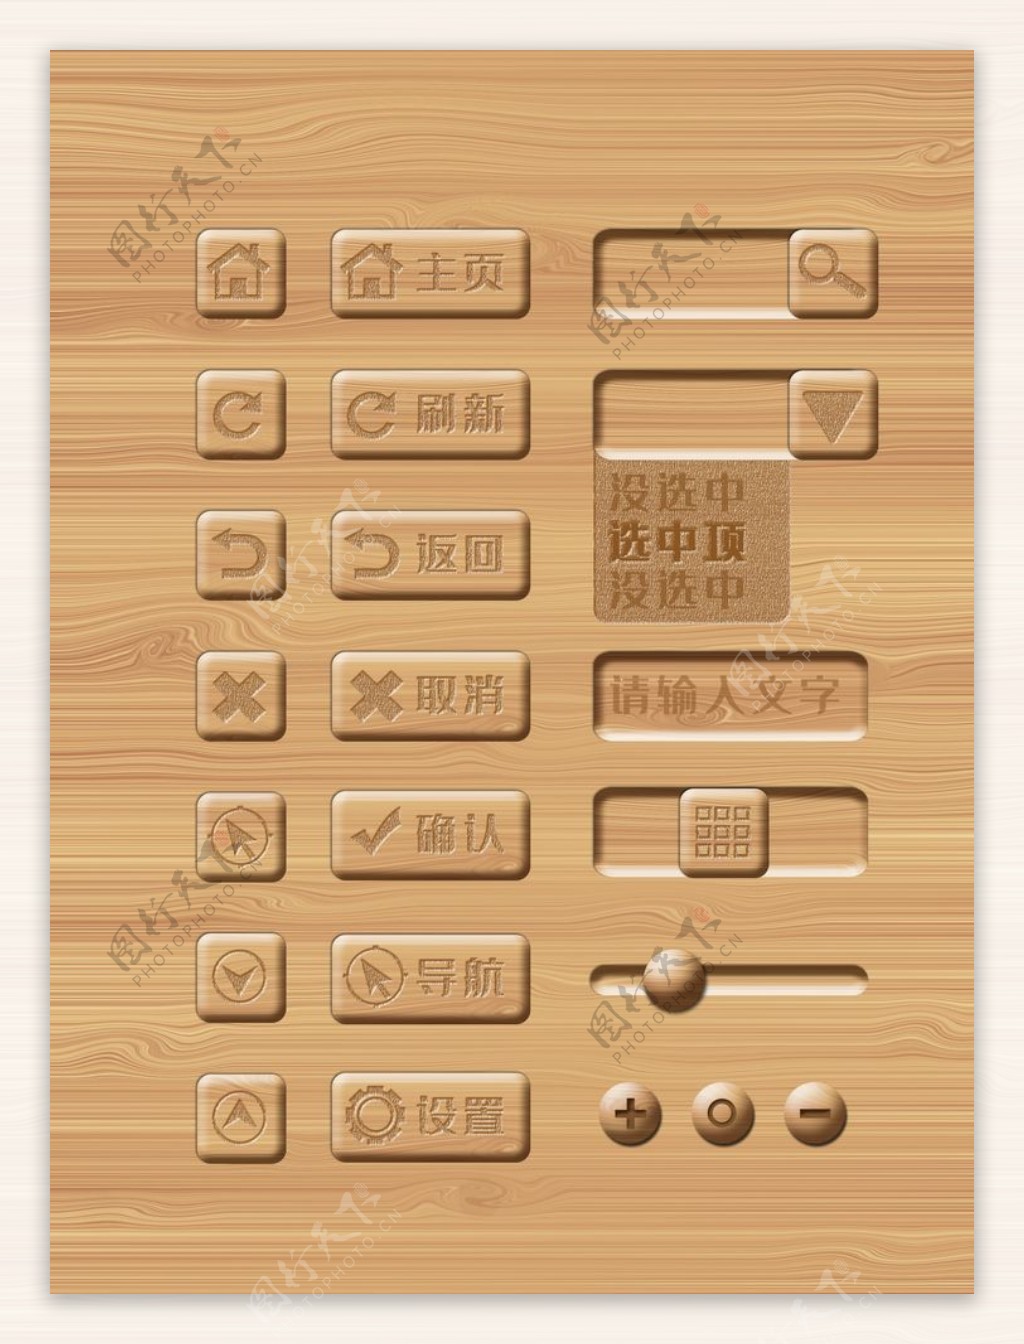 木质纹理网页UI设计素材